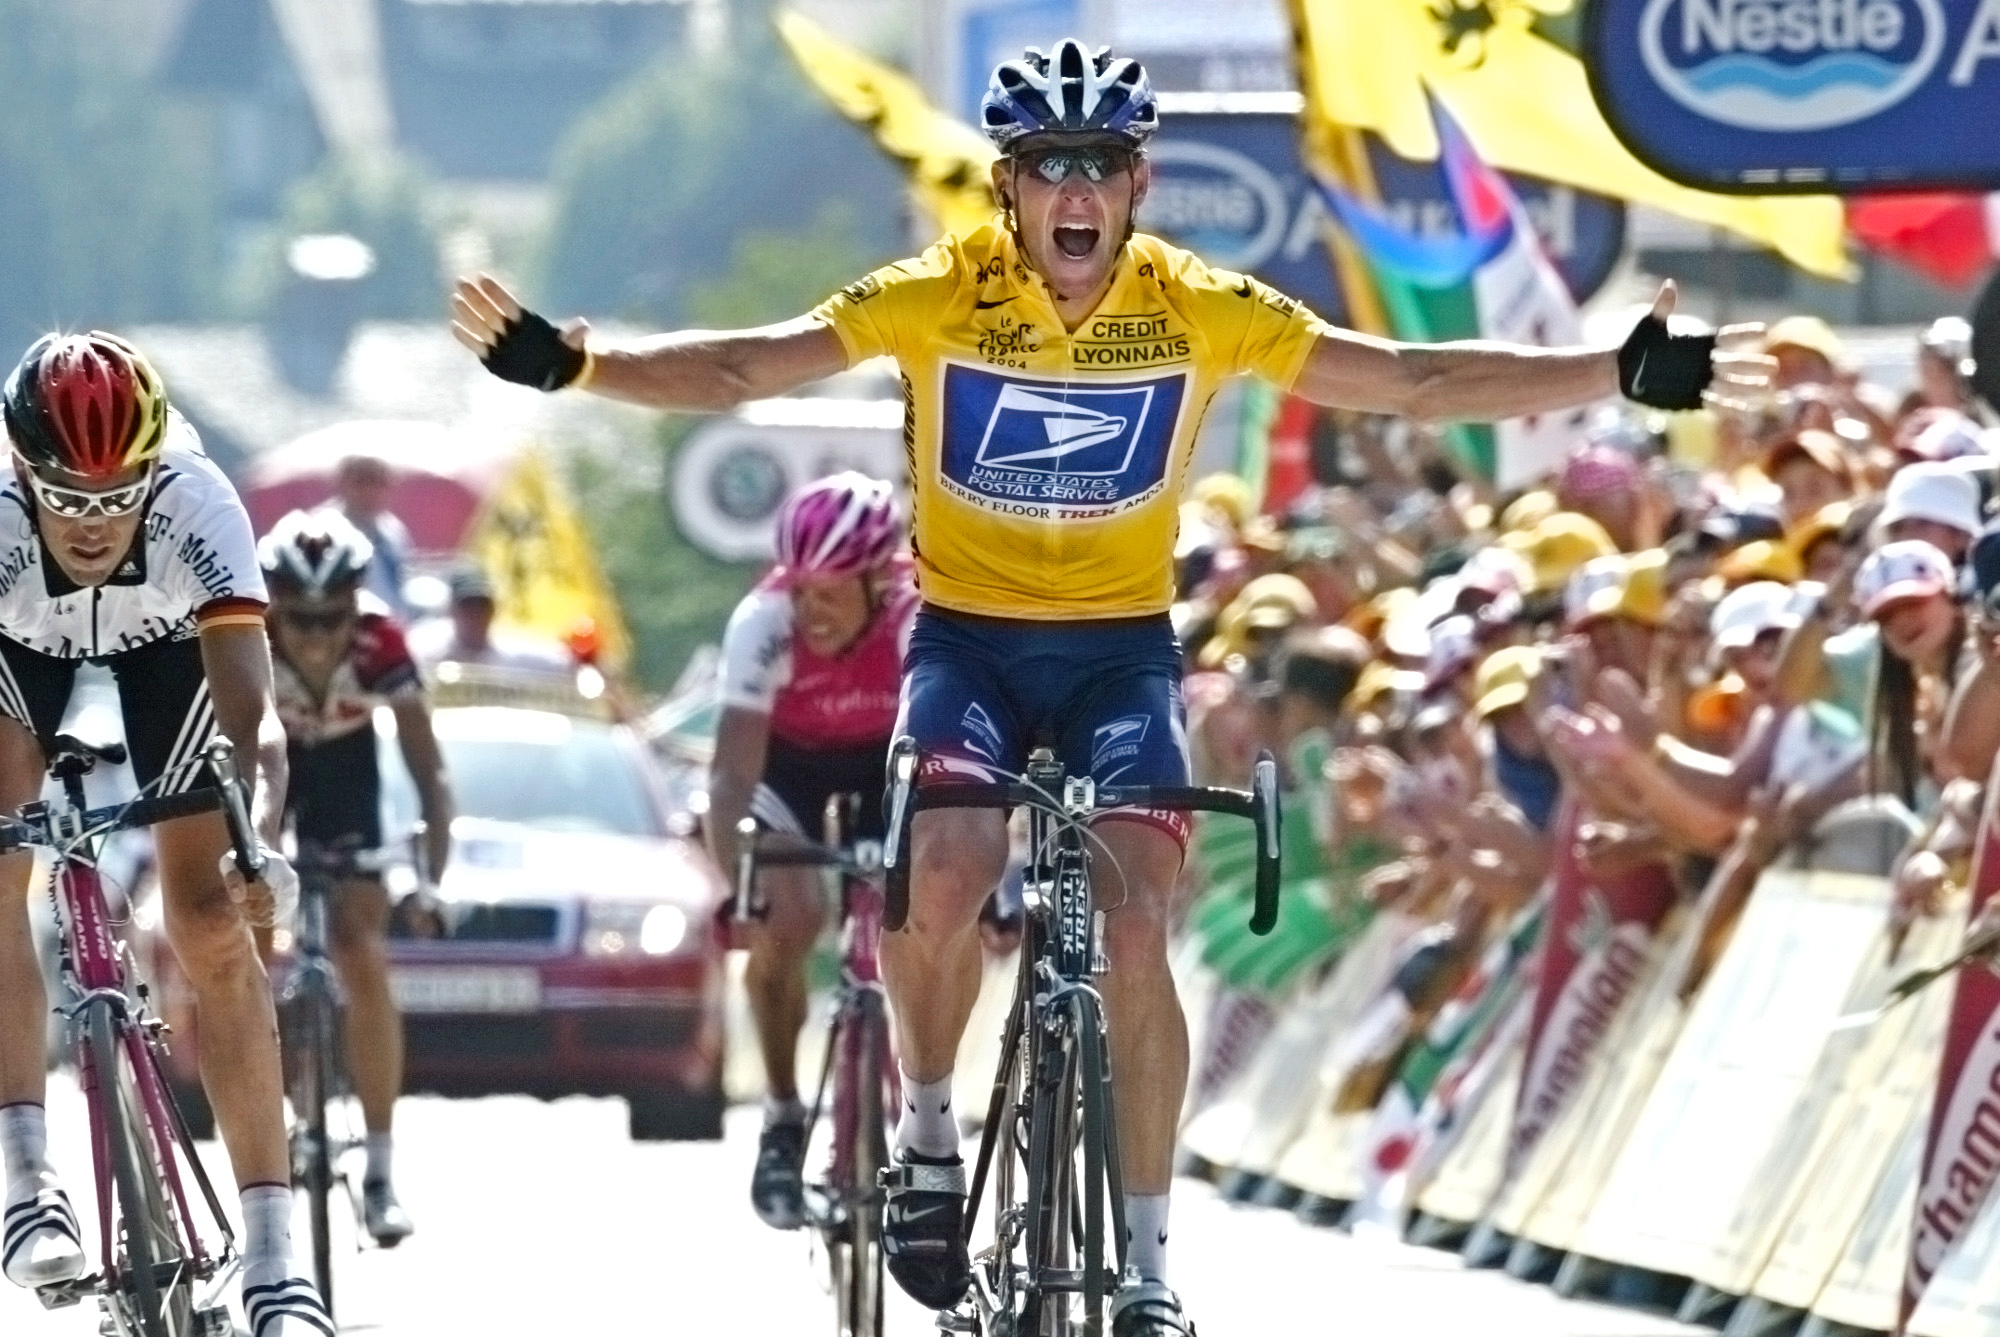 I Spanien friades Contador där han hävdade att han hade fått i sig genom en köttbit. Men högsta cykelförbundet Cas fäller Contador och domen blir två år.  